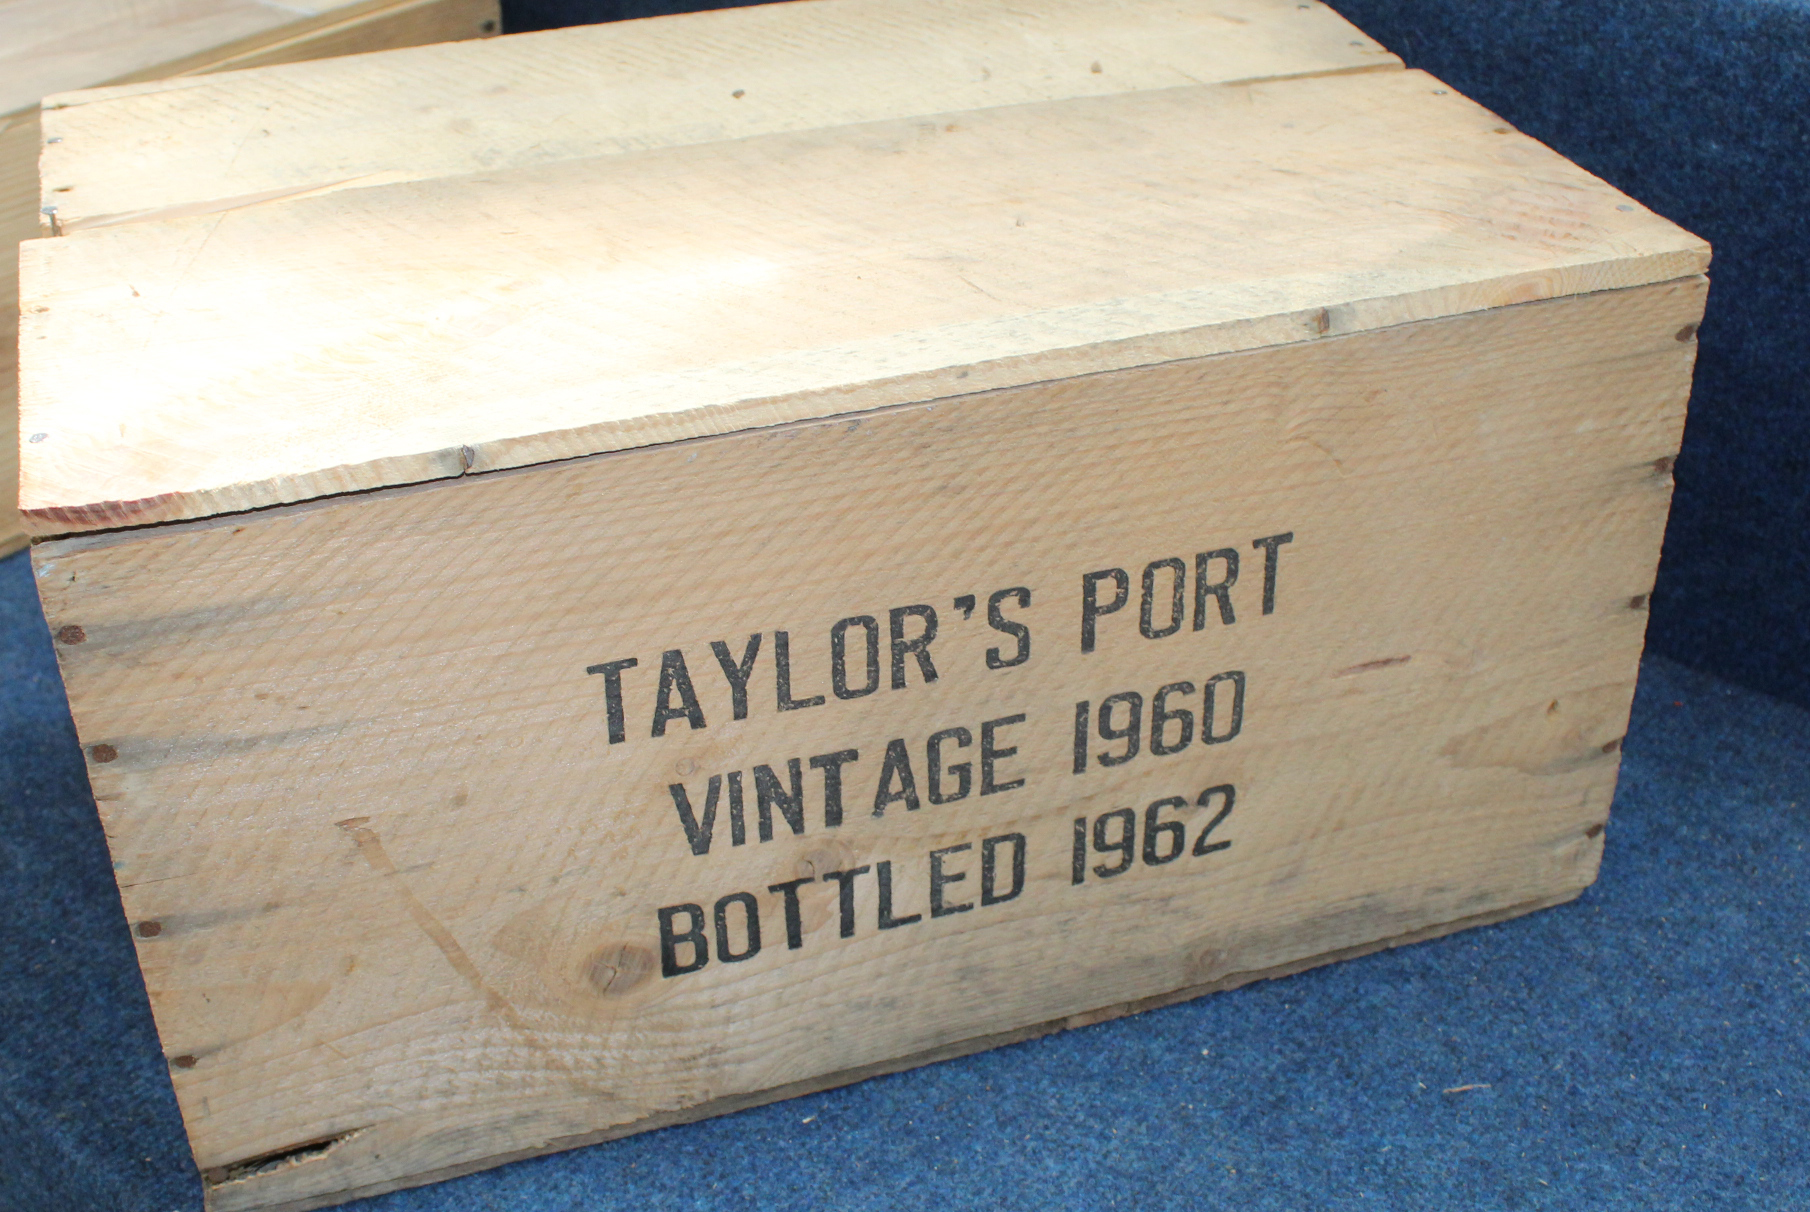 1960 Taylor Vintage Port together with original wooden case, one bottle. - Image 2 of 2